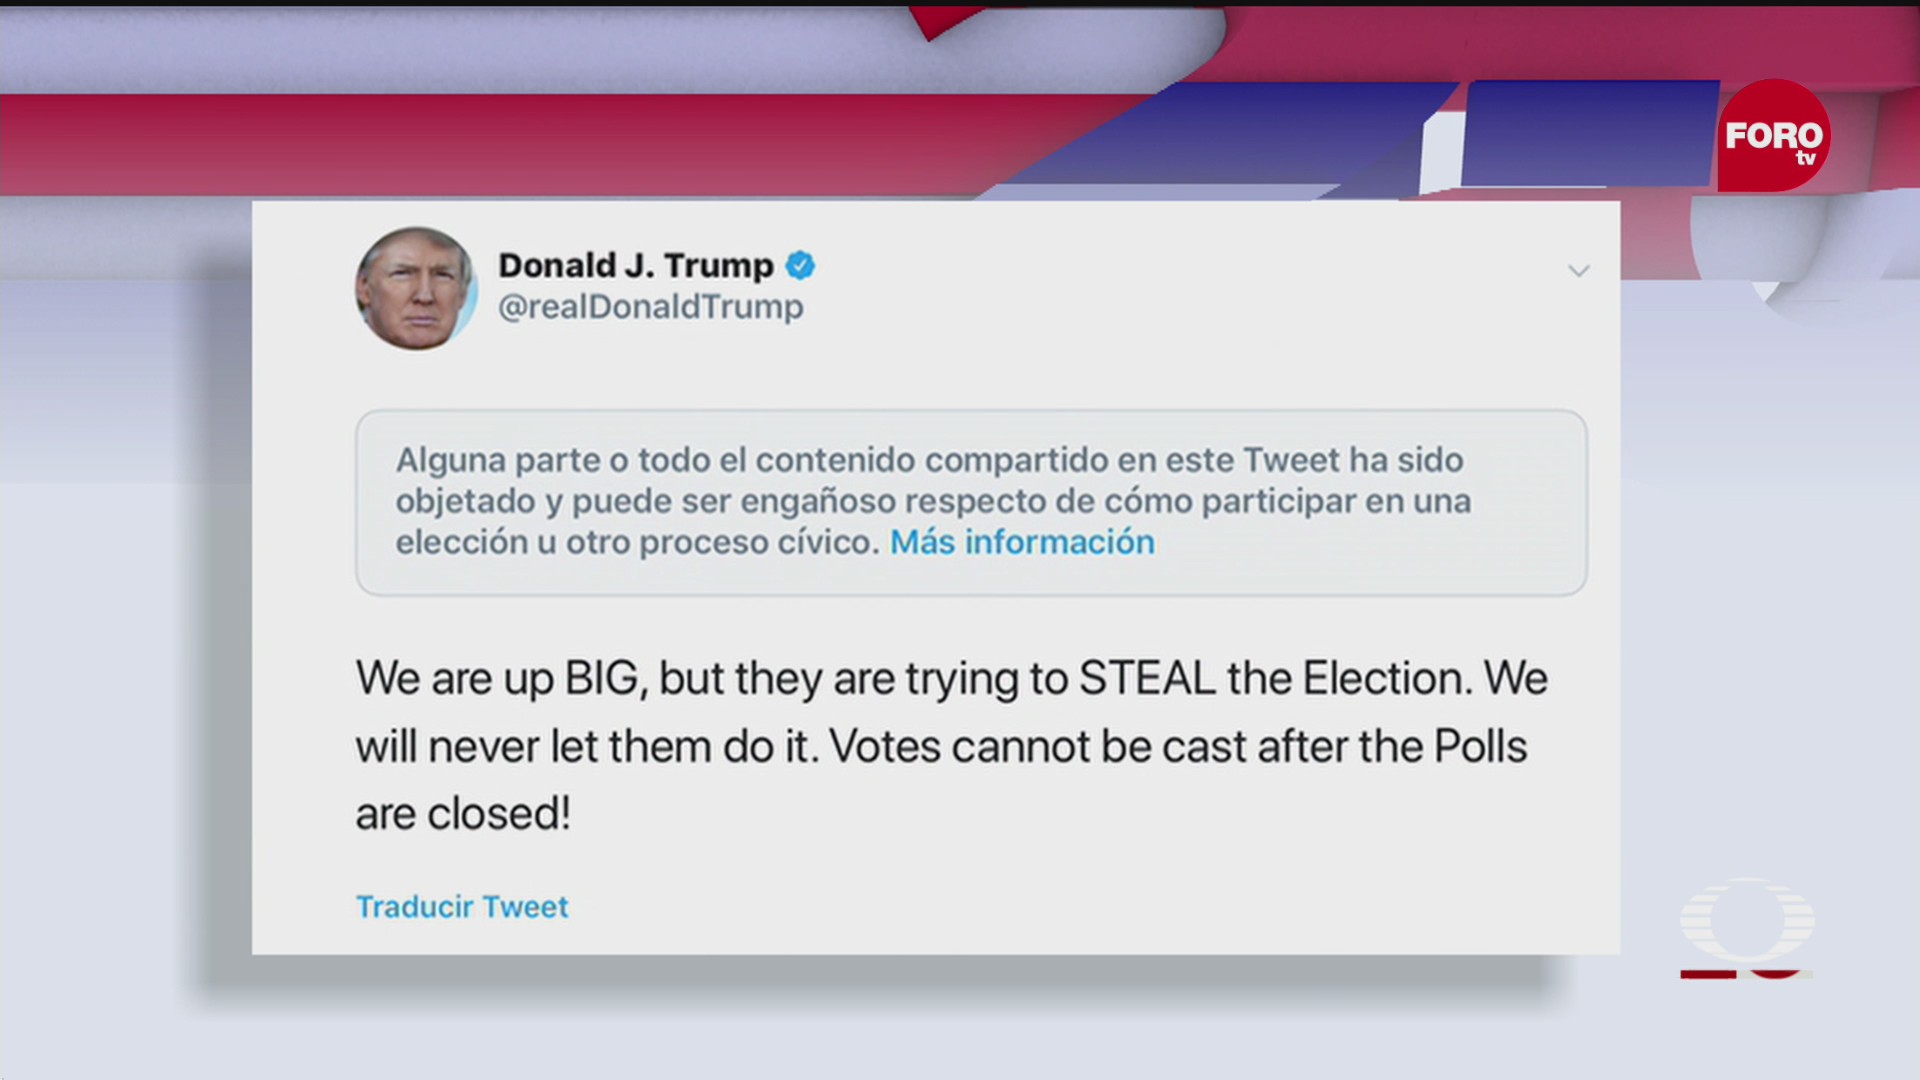 twitter bloquea tuit de donald trump donde acusa de robo en las elecciones